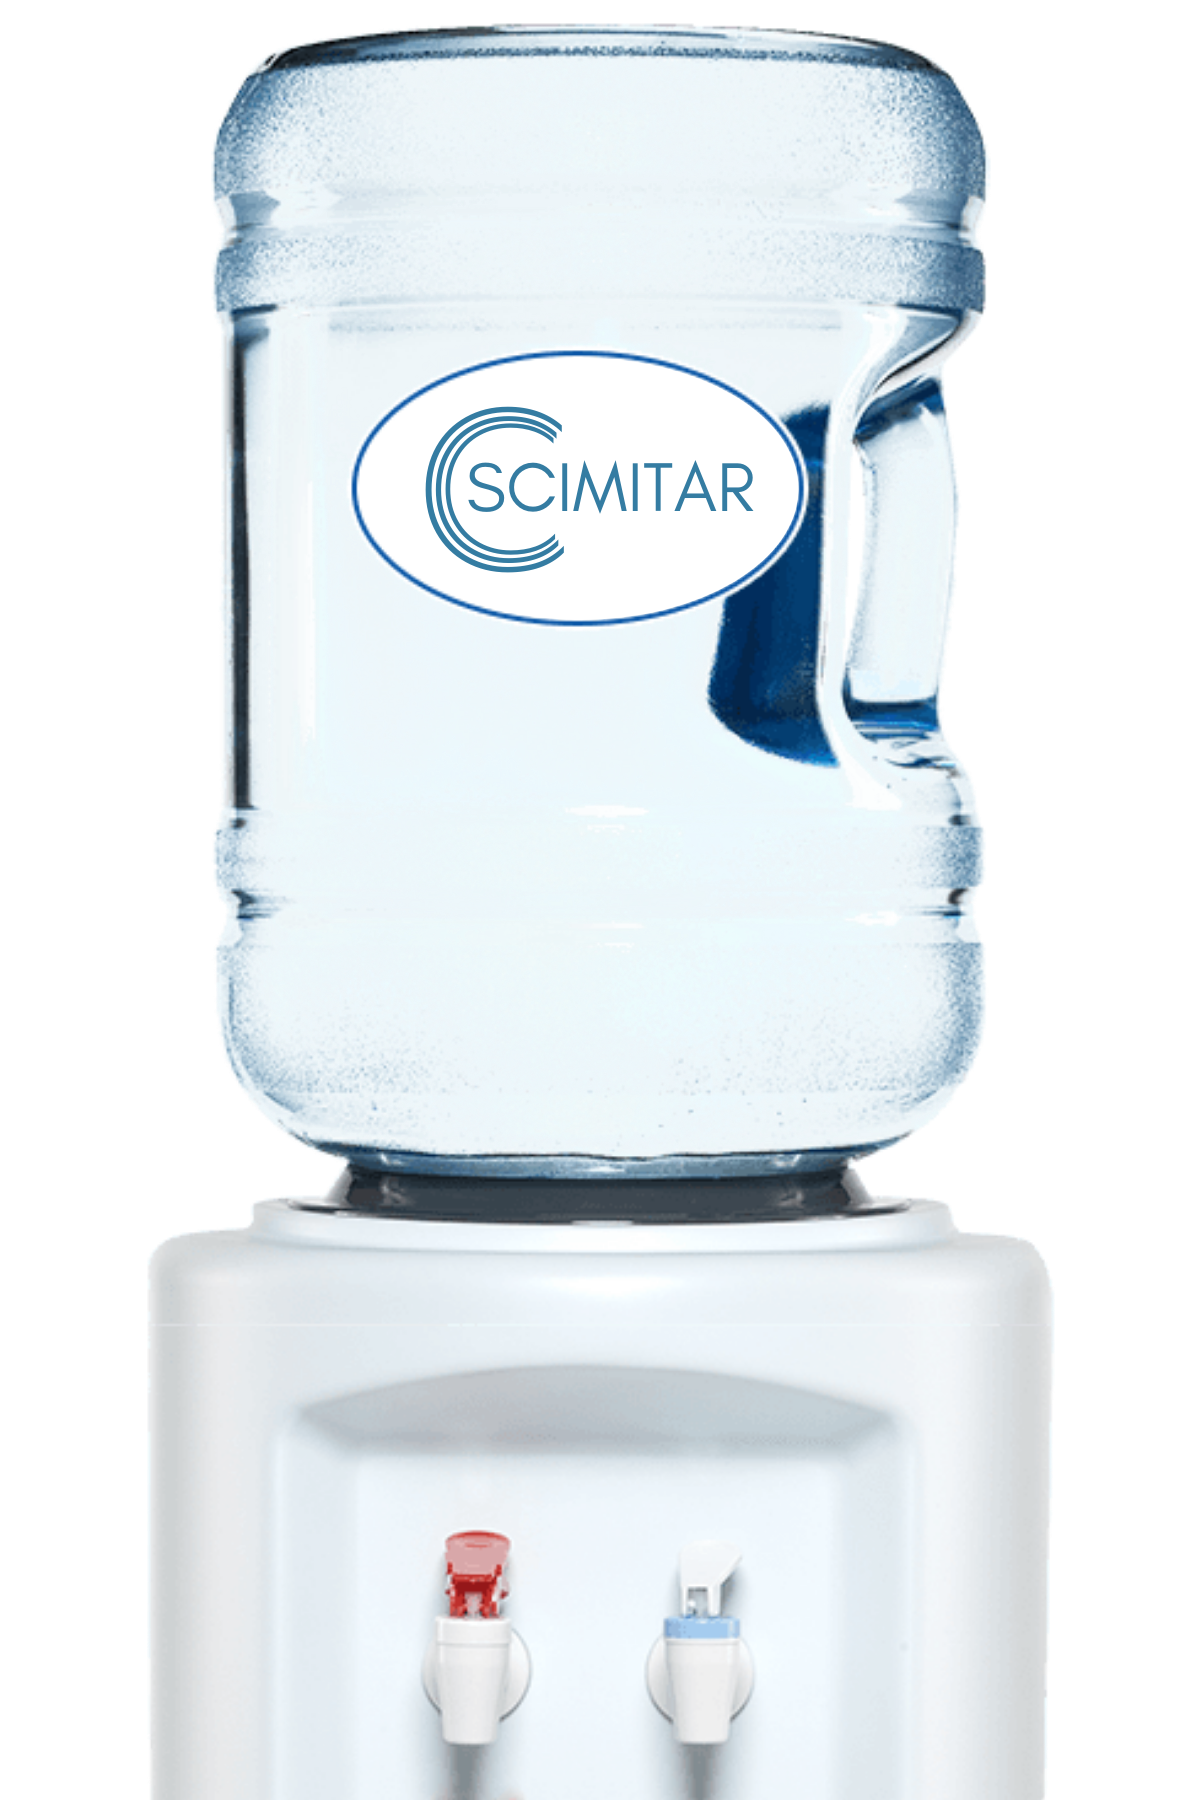 Scimitar Product Sample